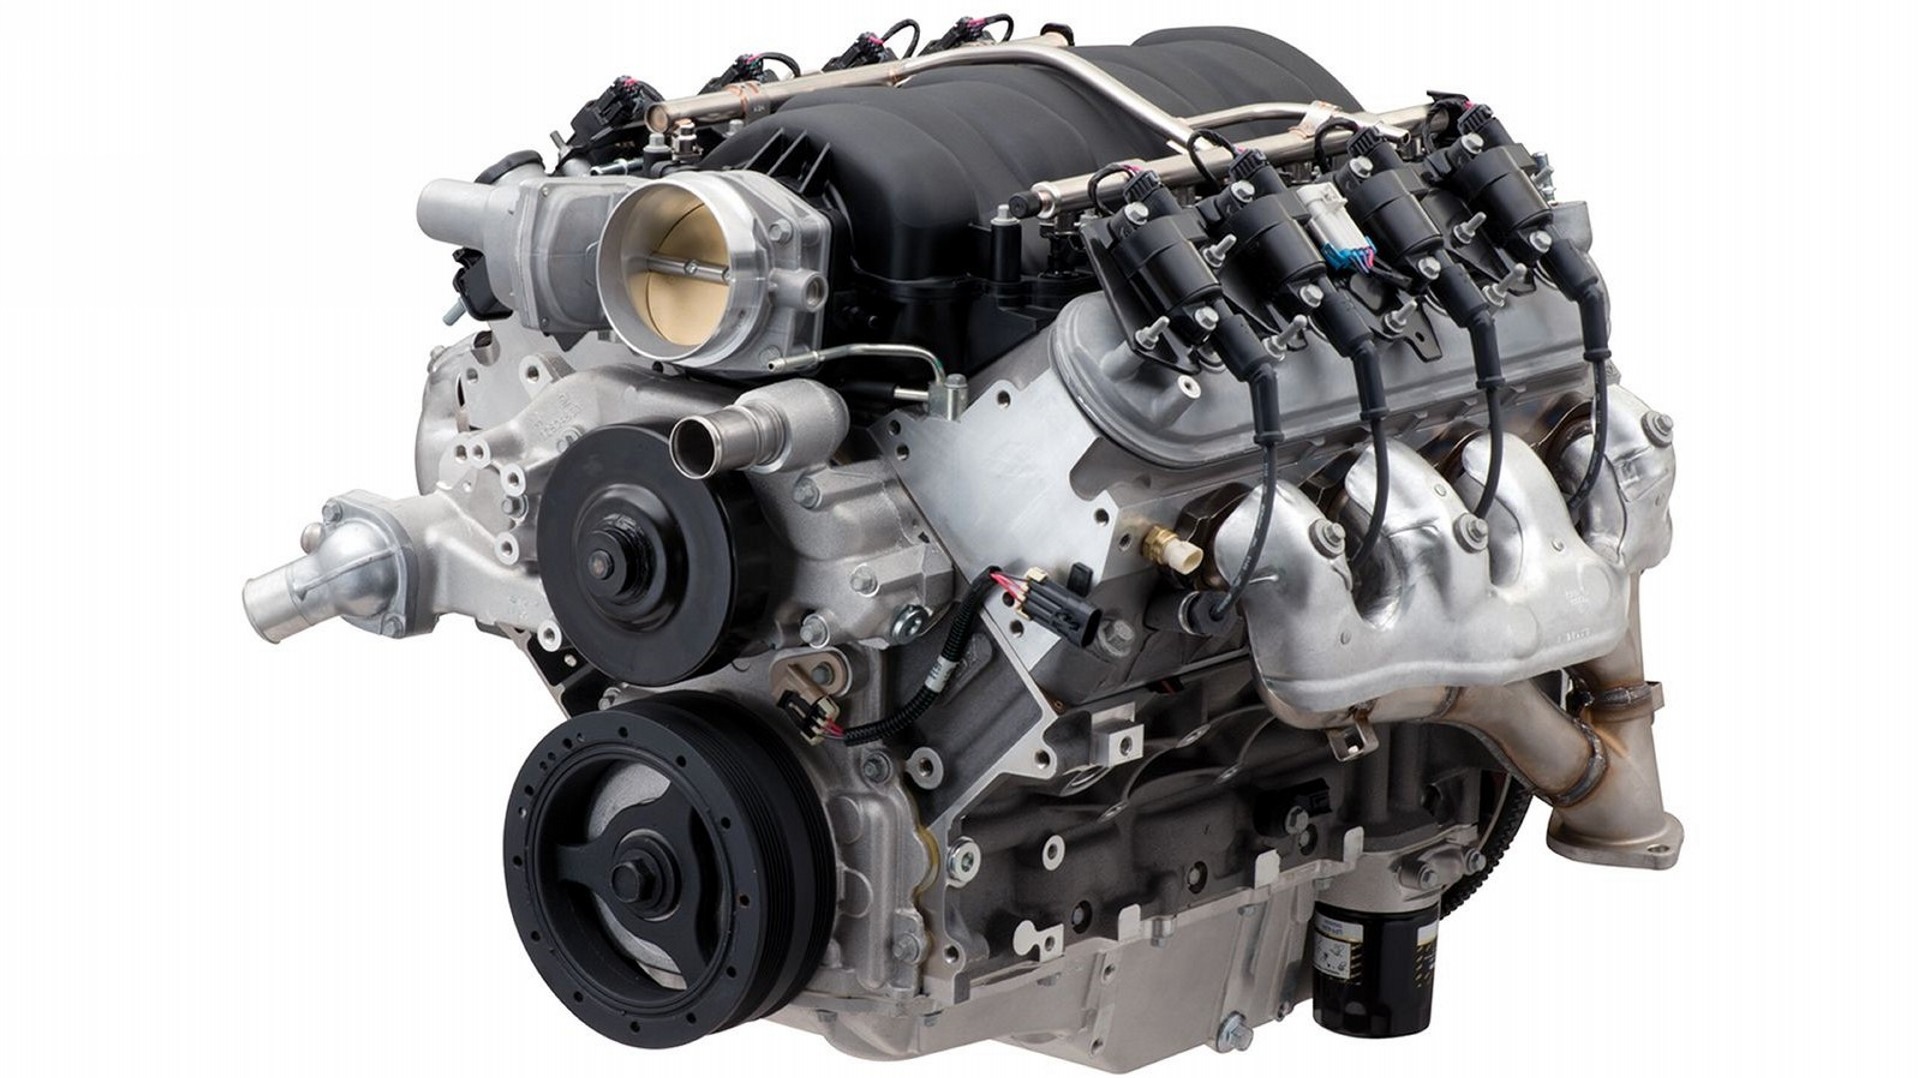 Chevrolet presenta su nuevo motor LS427/570